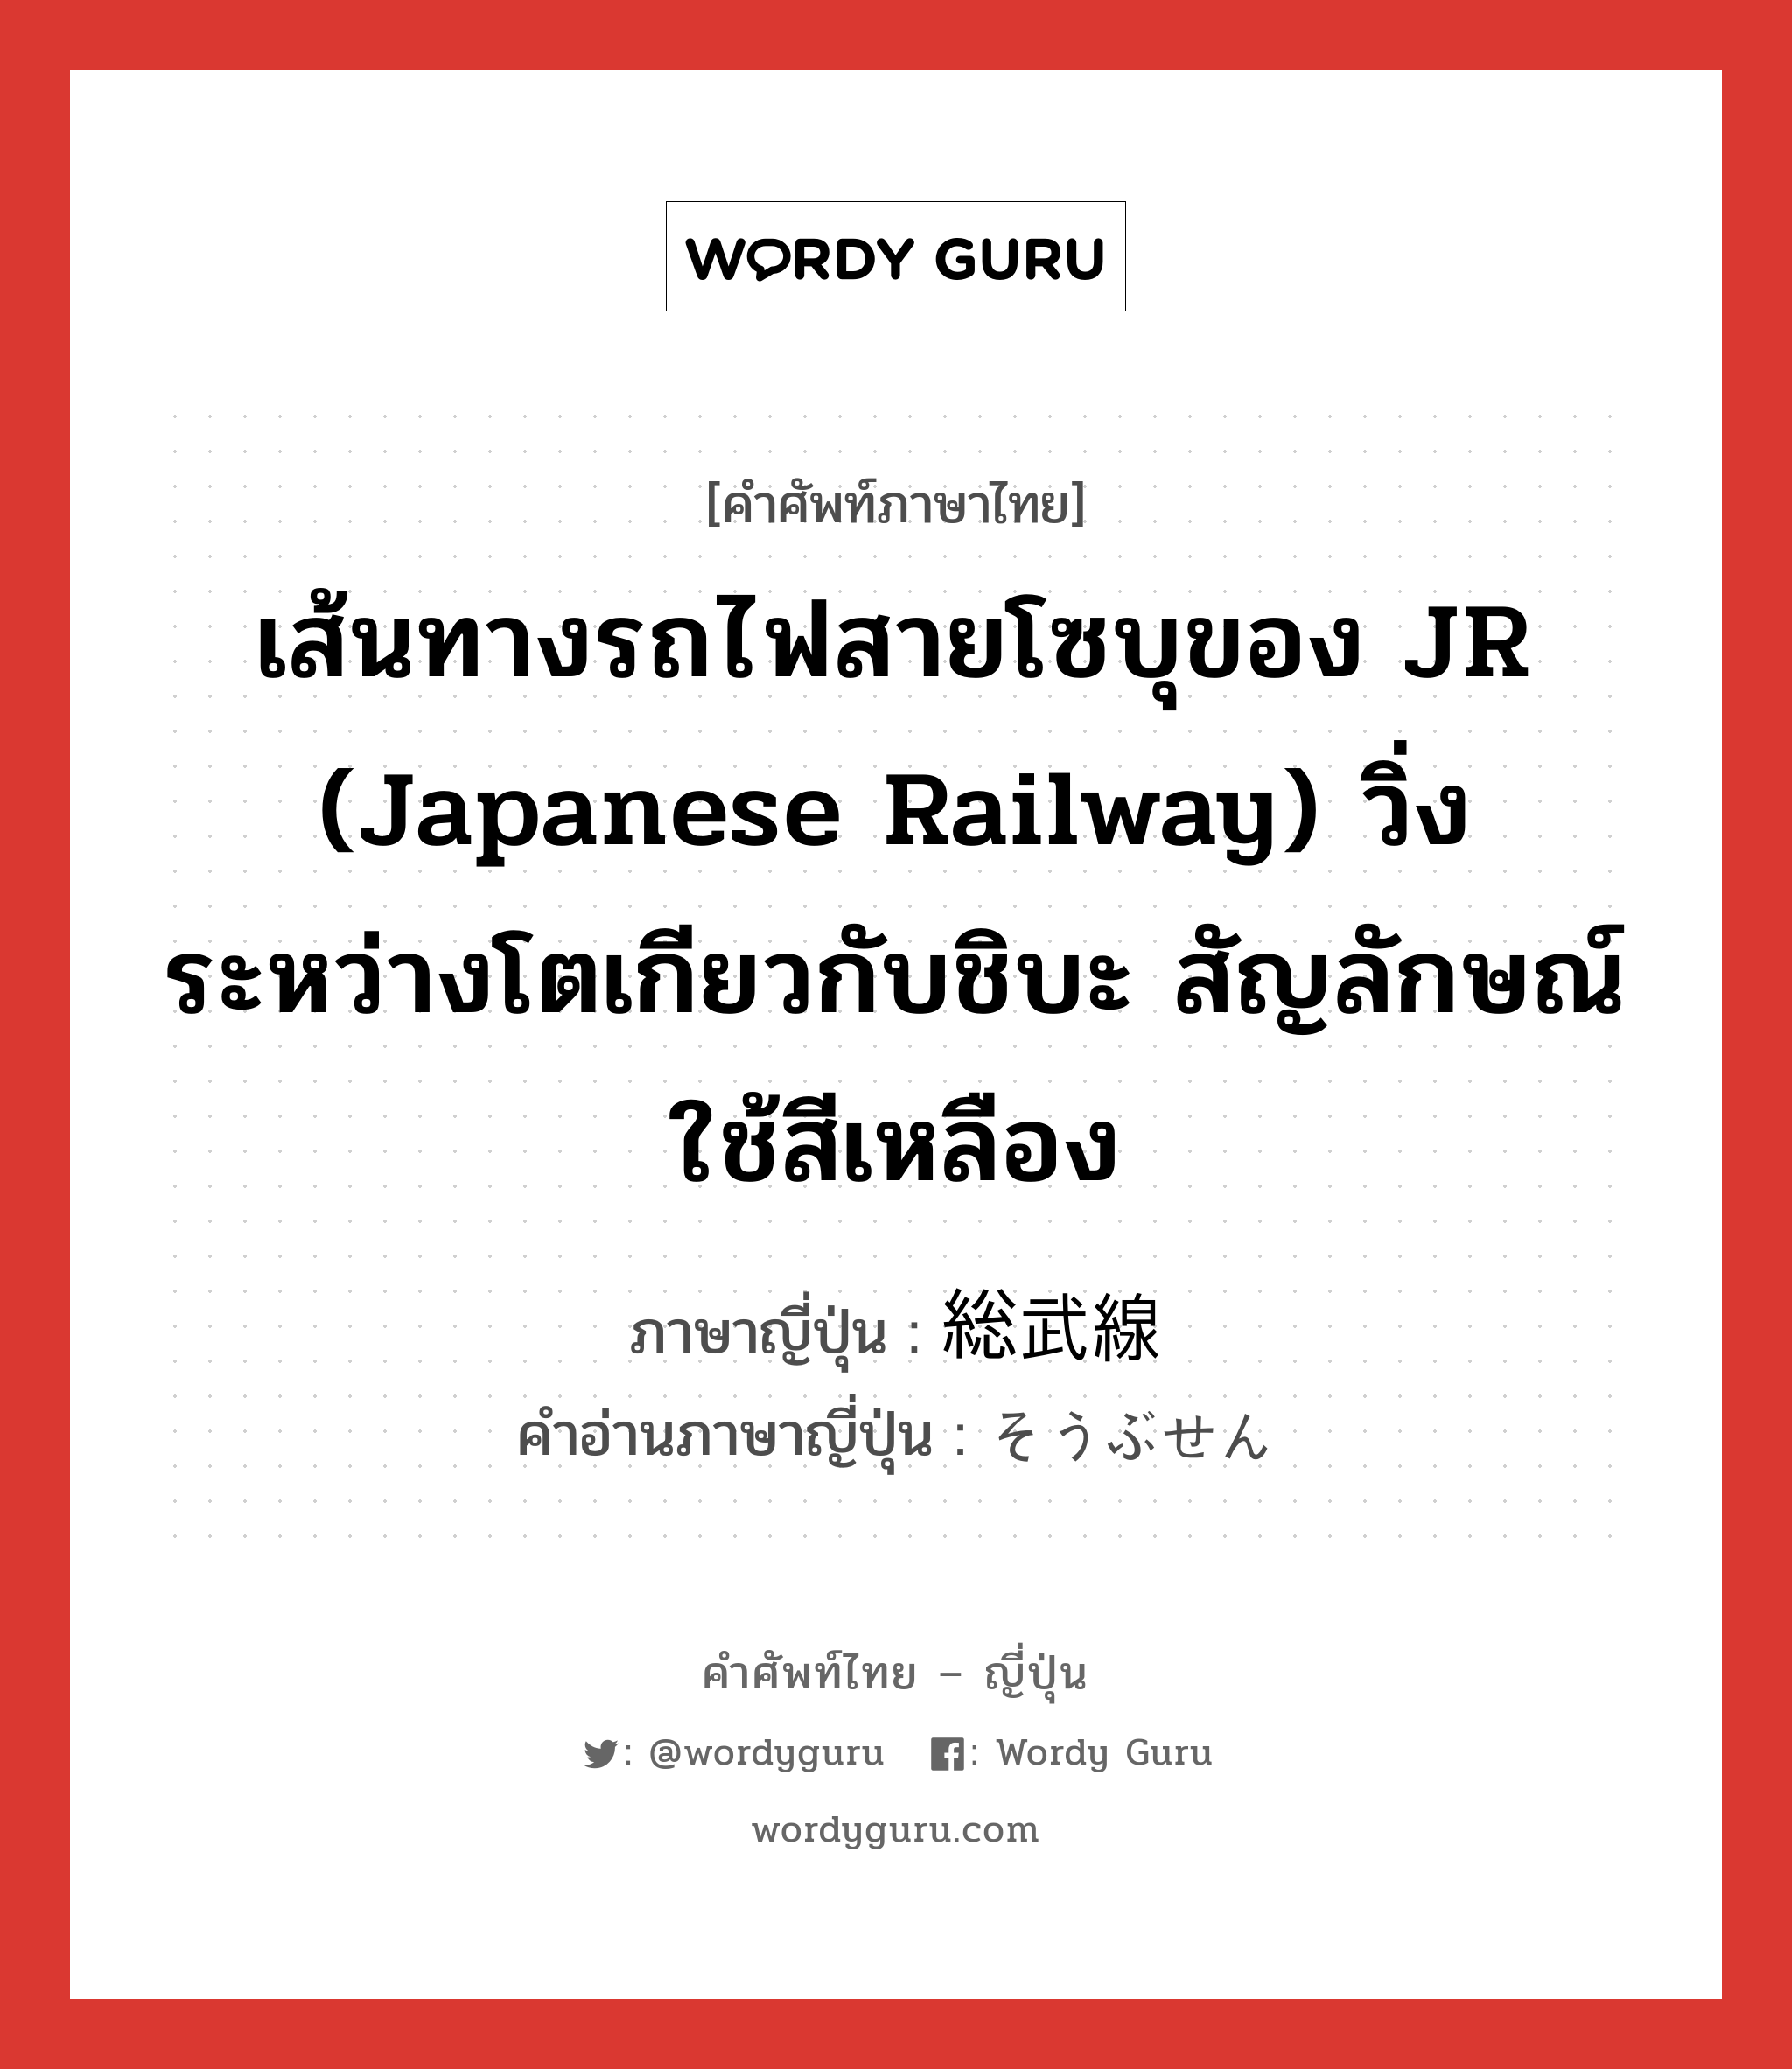 เส้นทางรถไฟสายโซบุของ JR (Japanese Railway) วิ่งระหว่างโตเกียวกับชิบะ สัญลักษณ์ใช้สีเหลือง ภาษาญี่ปุ่นคืออะไร, คำศัพท์ภาษาไทย - ญี่ปุ่น เส้นทางรถไฟสายโซบุของ JR (Japanese Railway) วิ่งระหว่างโตเกียวกับชิบะ สัญลักษณ์ใช้สีเหลือง ภาษาญี่ปุ่น 総武線 คำอ่านภาษาญี่ปุ่น そうぶせん หมวด n หมวด n